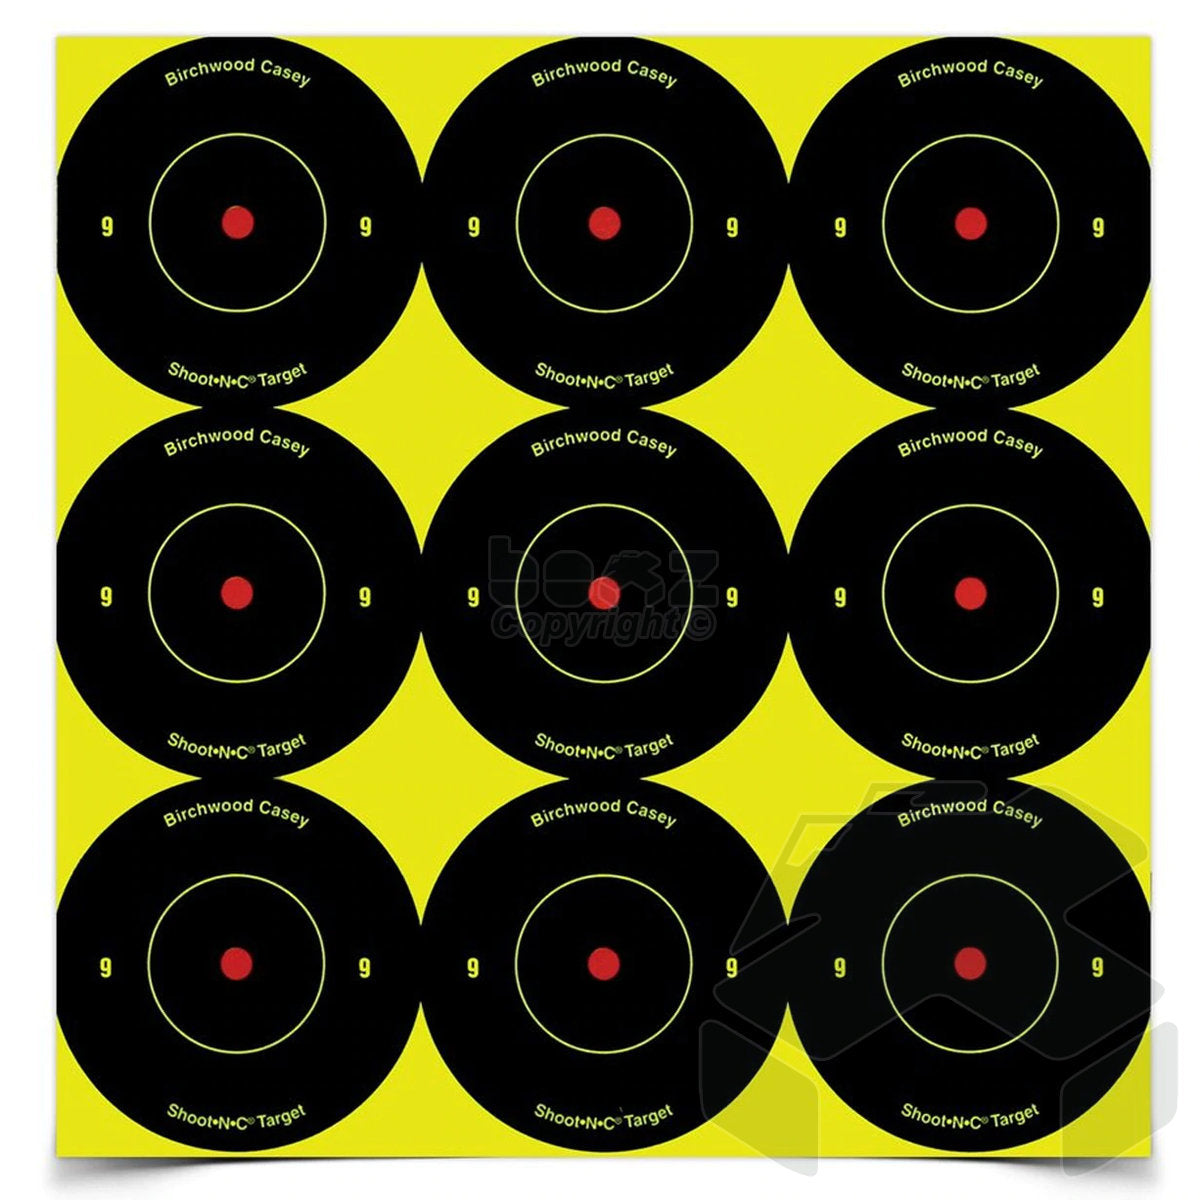 Birchwood Casey Shoot-N-C Targets 2" Bull's-Eye Targets - 108 Targets